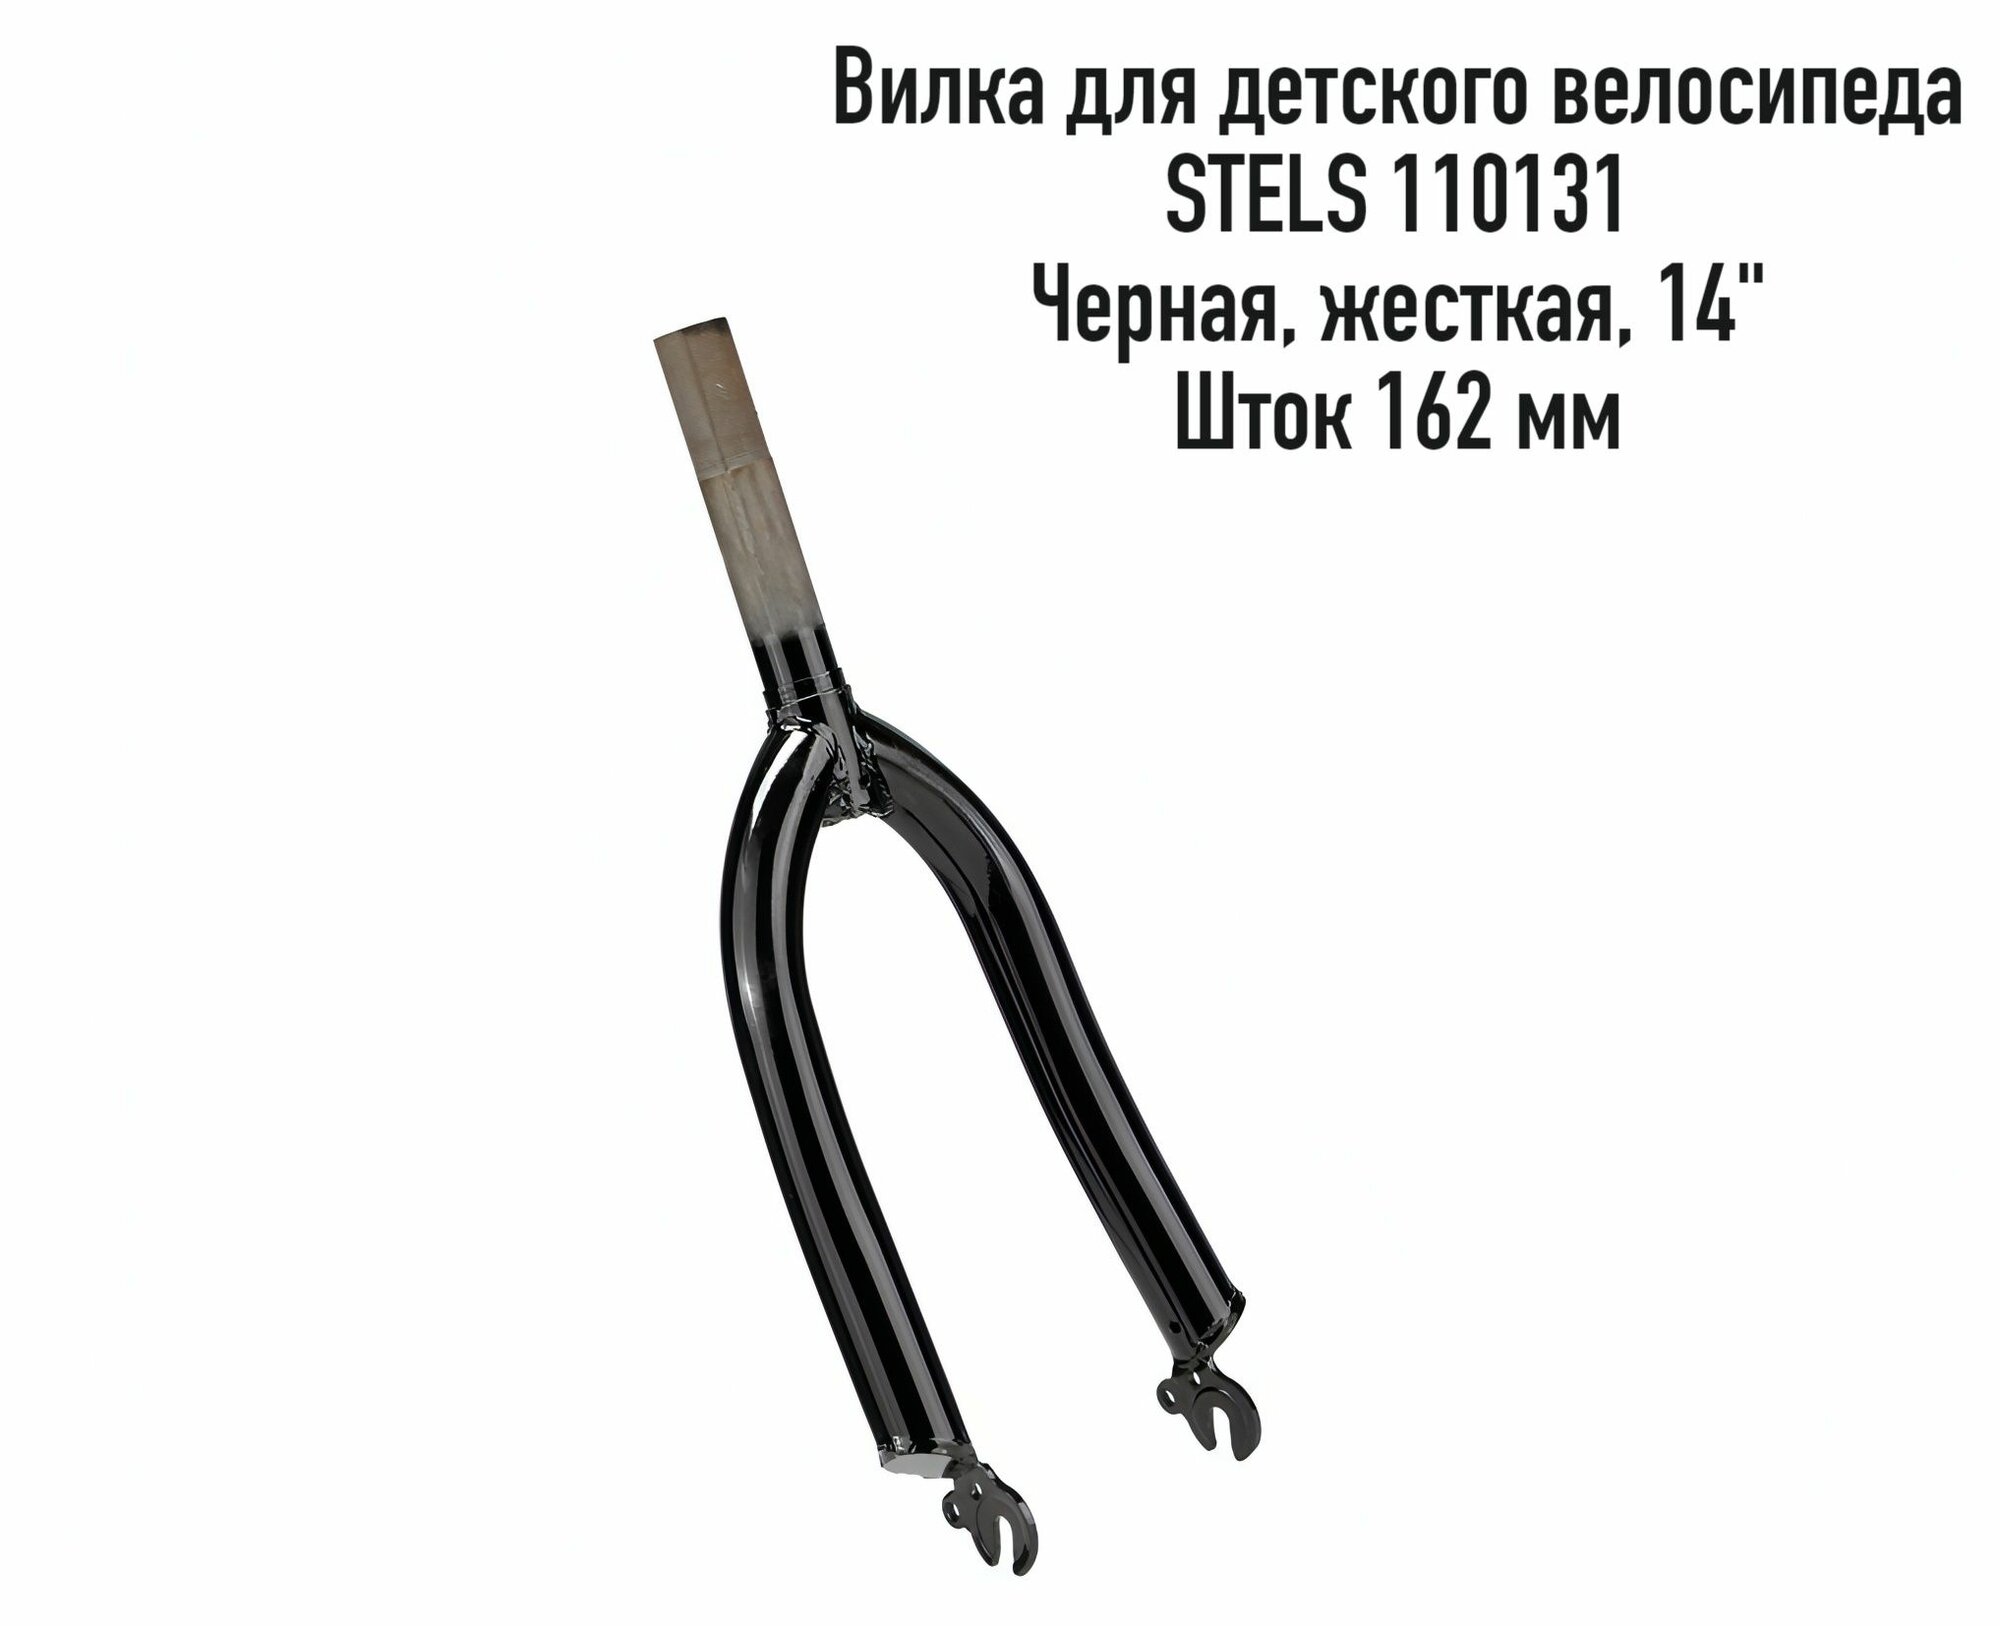 Вилка для детского велосипеда Stels 110131, 14", шток 162мм, черная, стальная, жесткая